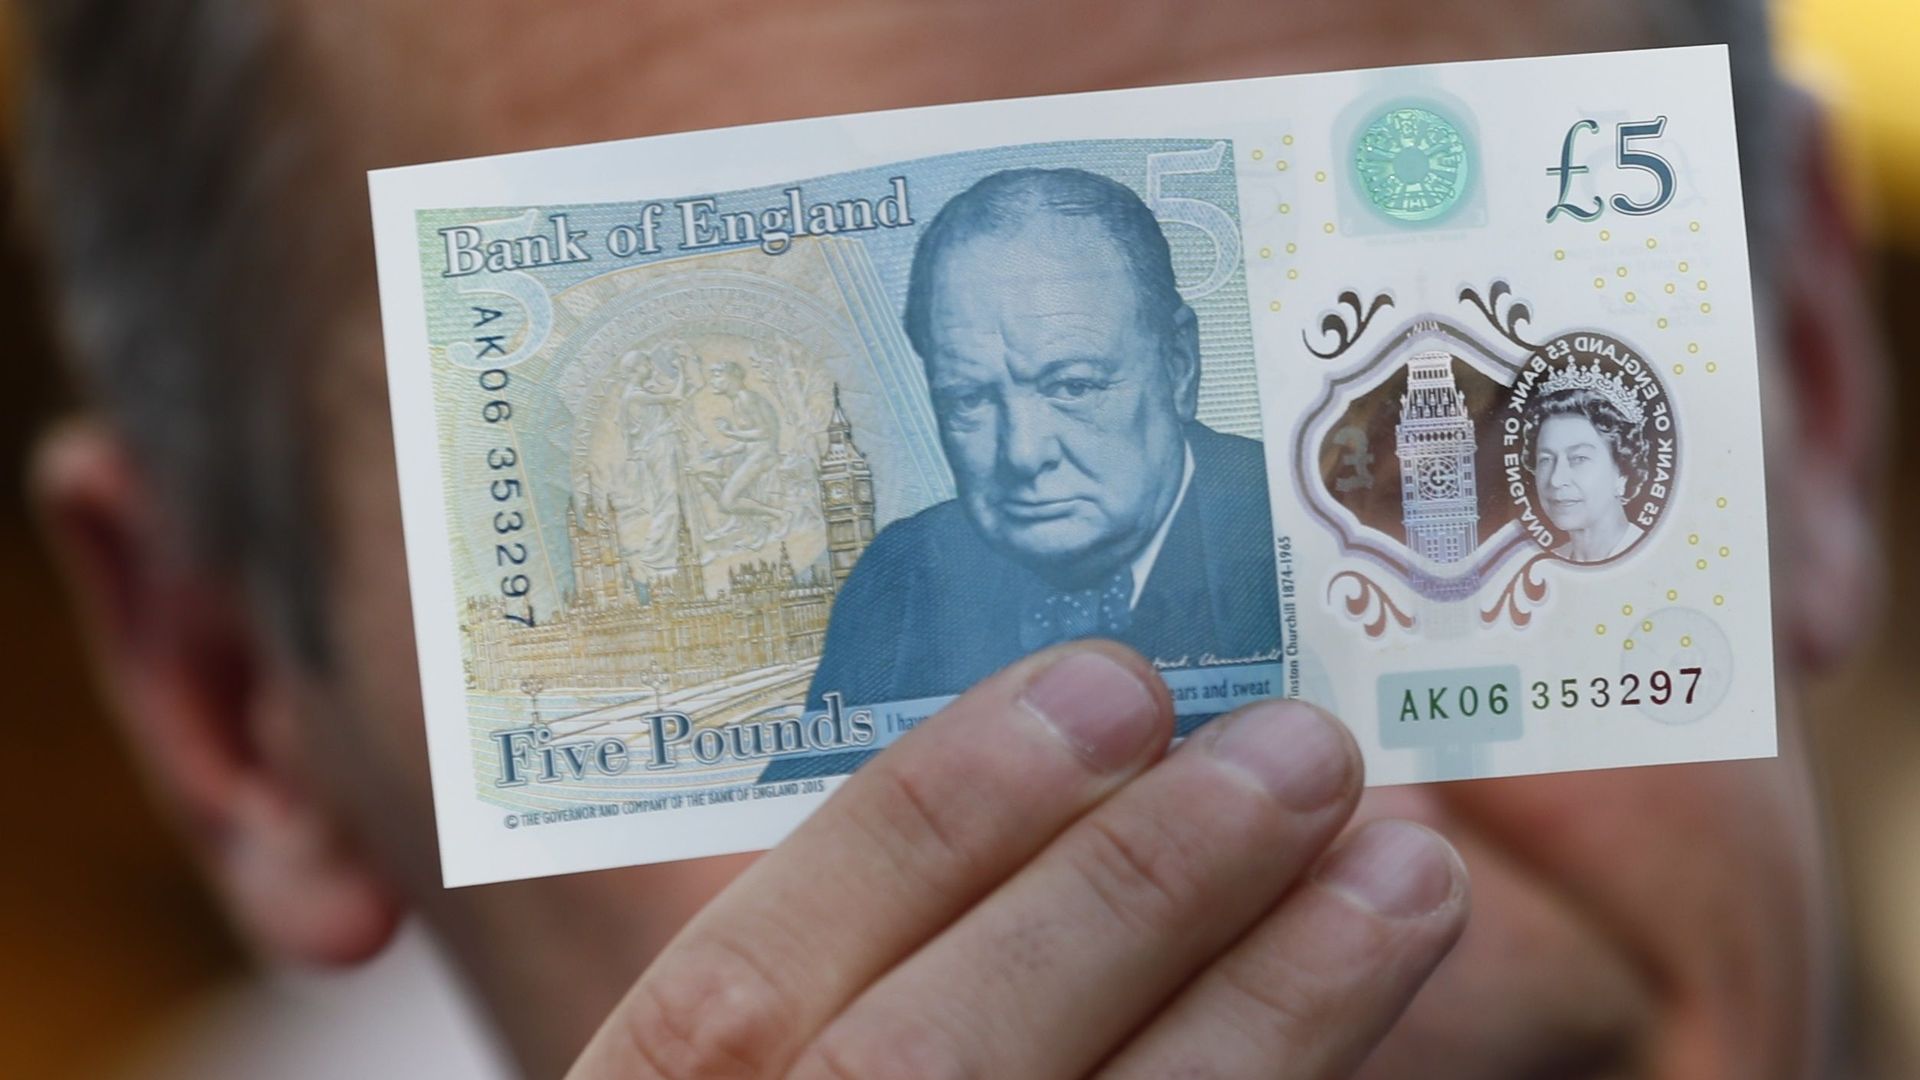 Le célèbre portrait de Winston Churchill figure même sur les billets de 5 livres Sterling.